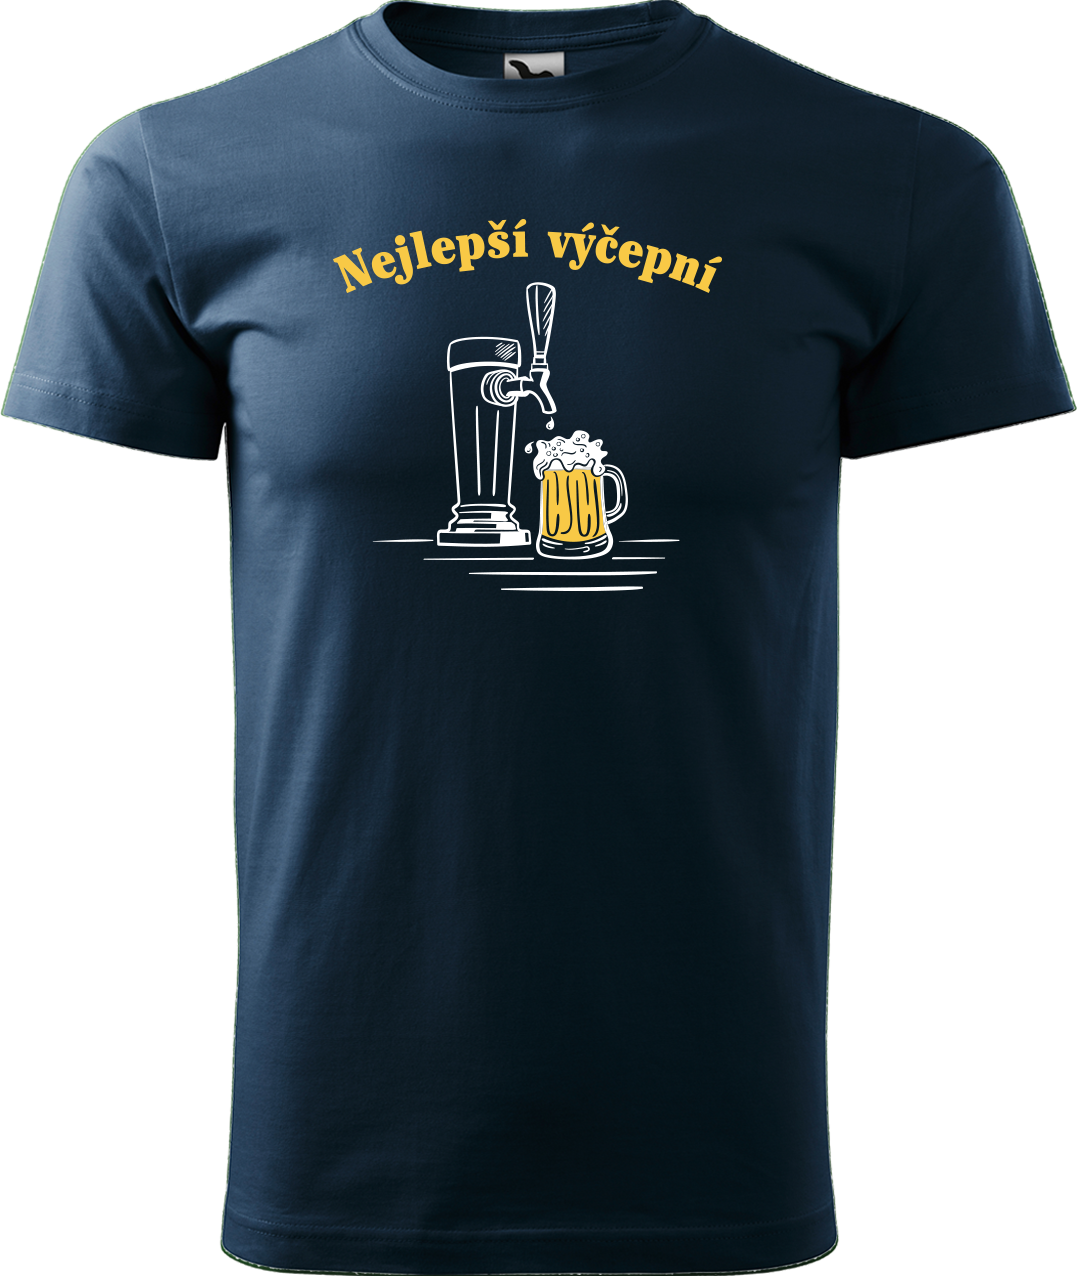 Pivní tričko - Nejlepší hospodskej Velikost: S, Barva: Námořní modrá (02)